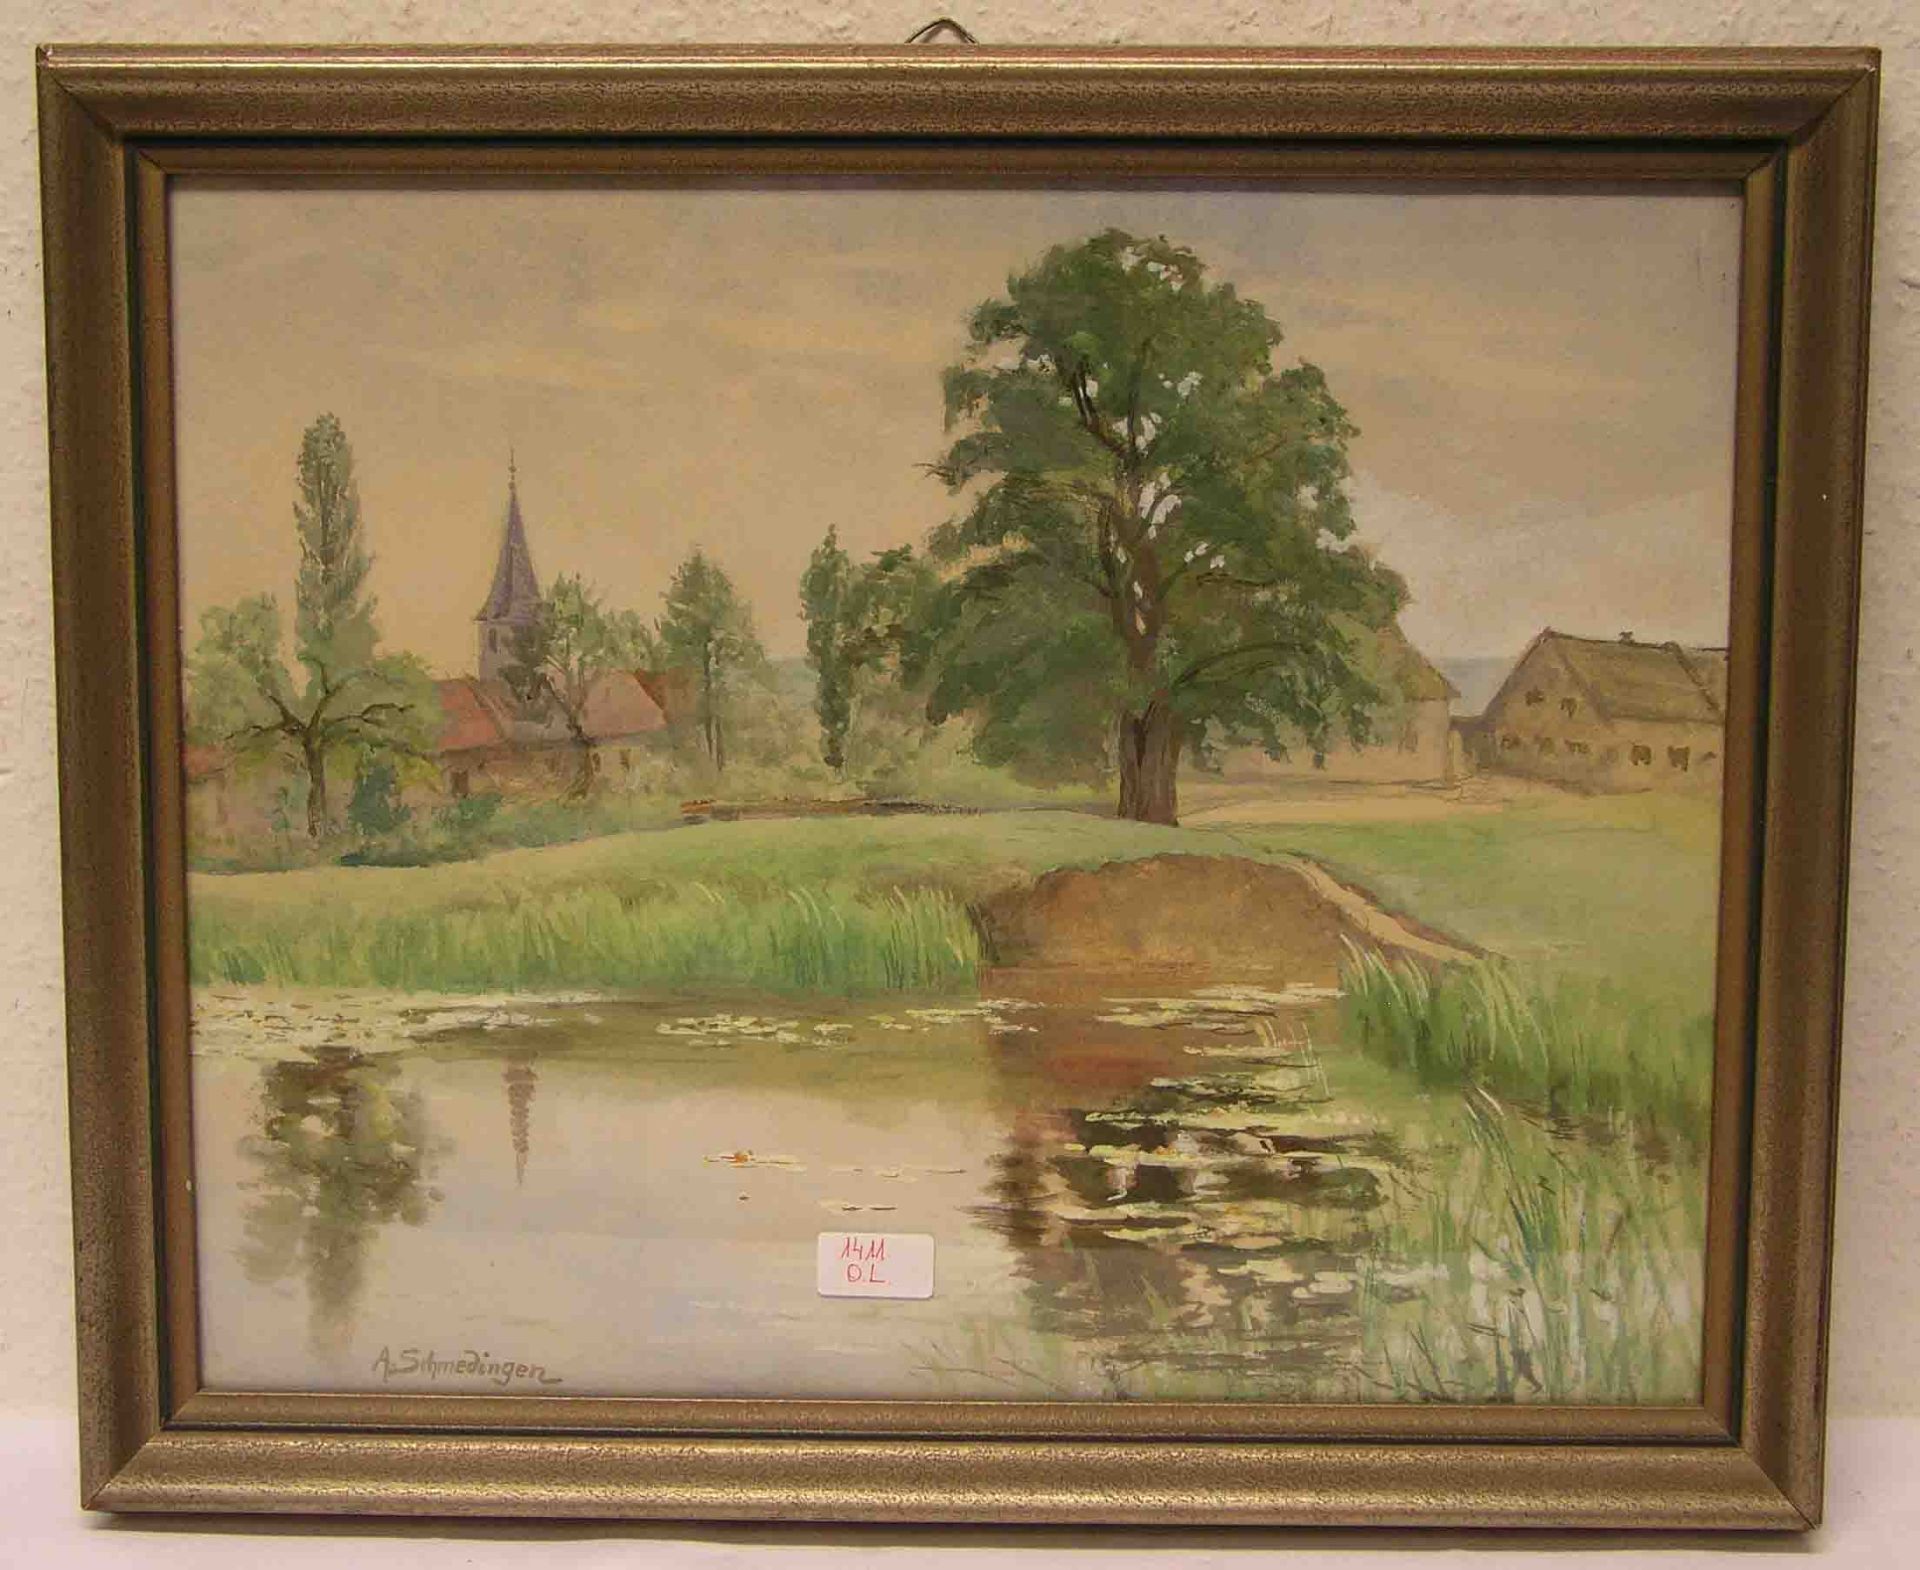 Schmedingen, Alfred (1871 - 1949). Maler und Konservator in Bamberg: "Fränkisches Dorf amFluss".